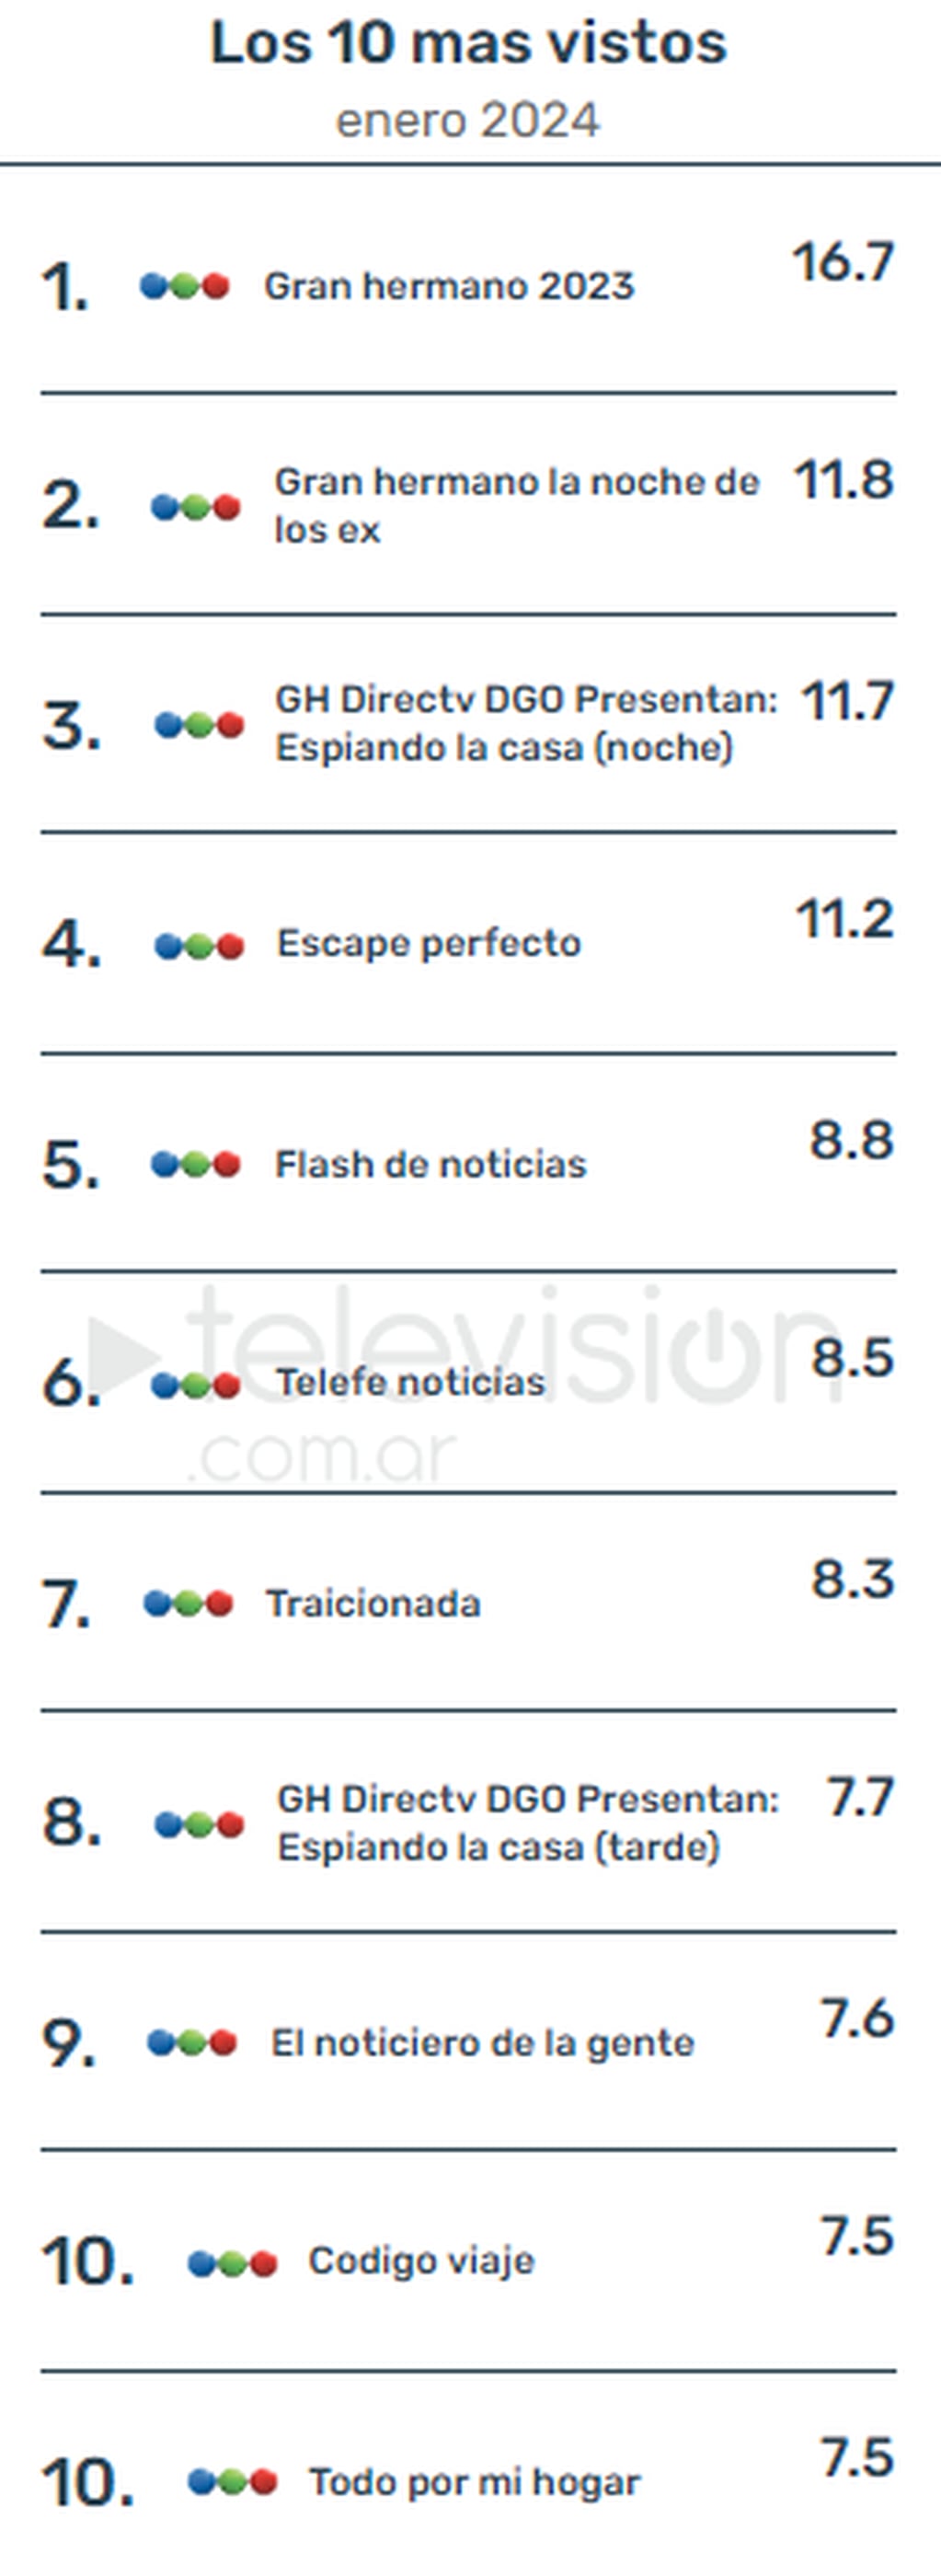 Los programas de telefe ocupan el top 10 de los más vistos en enero. Fuente: televición.com.ar.